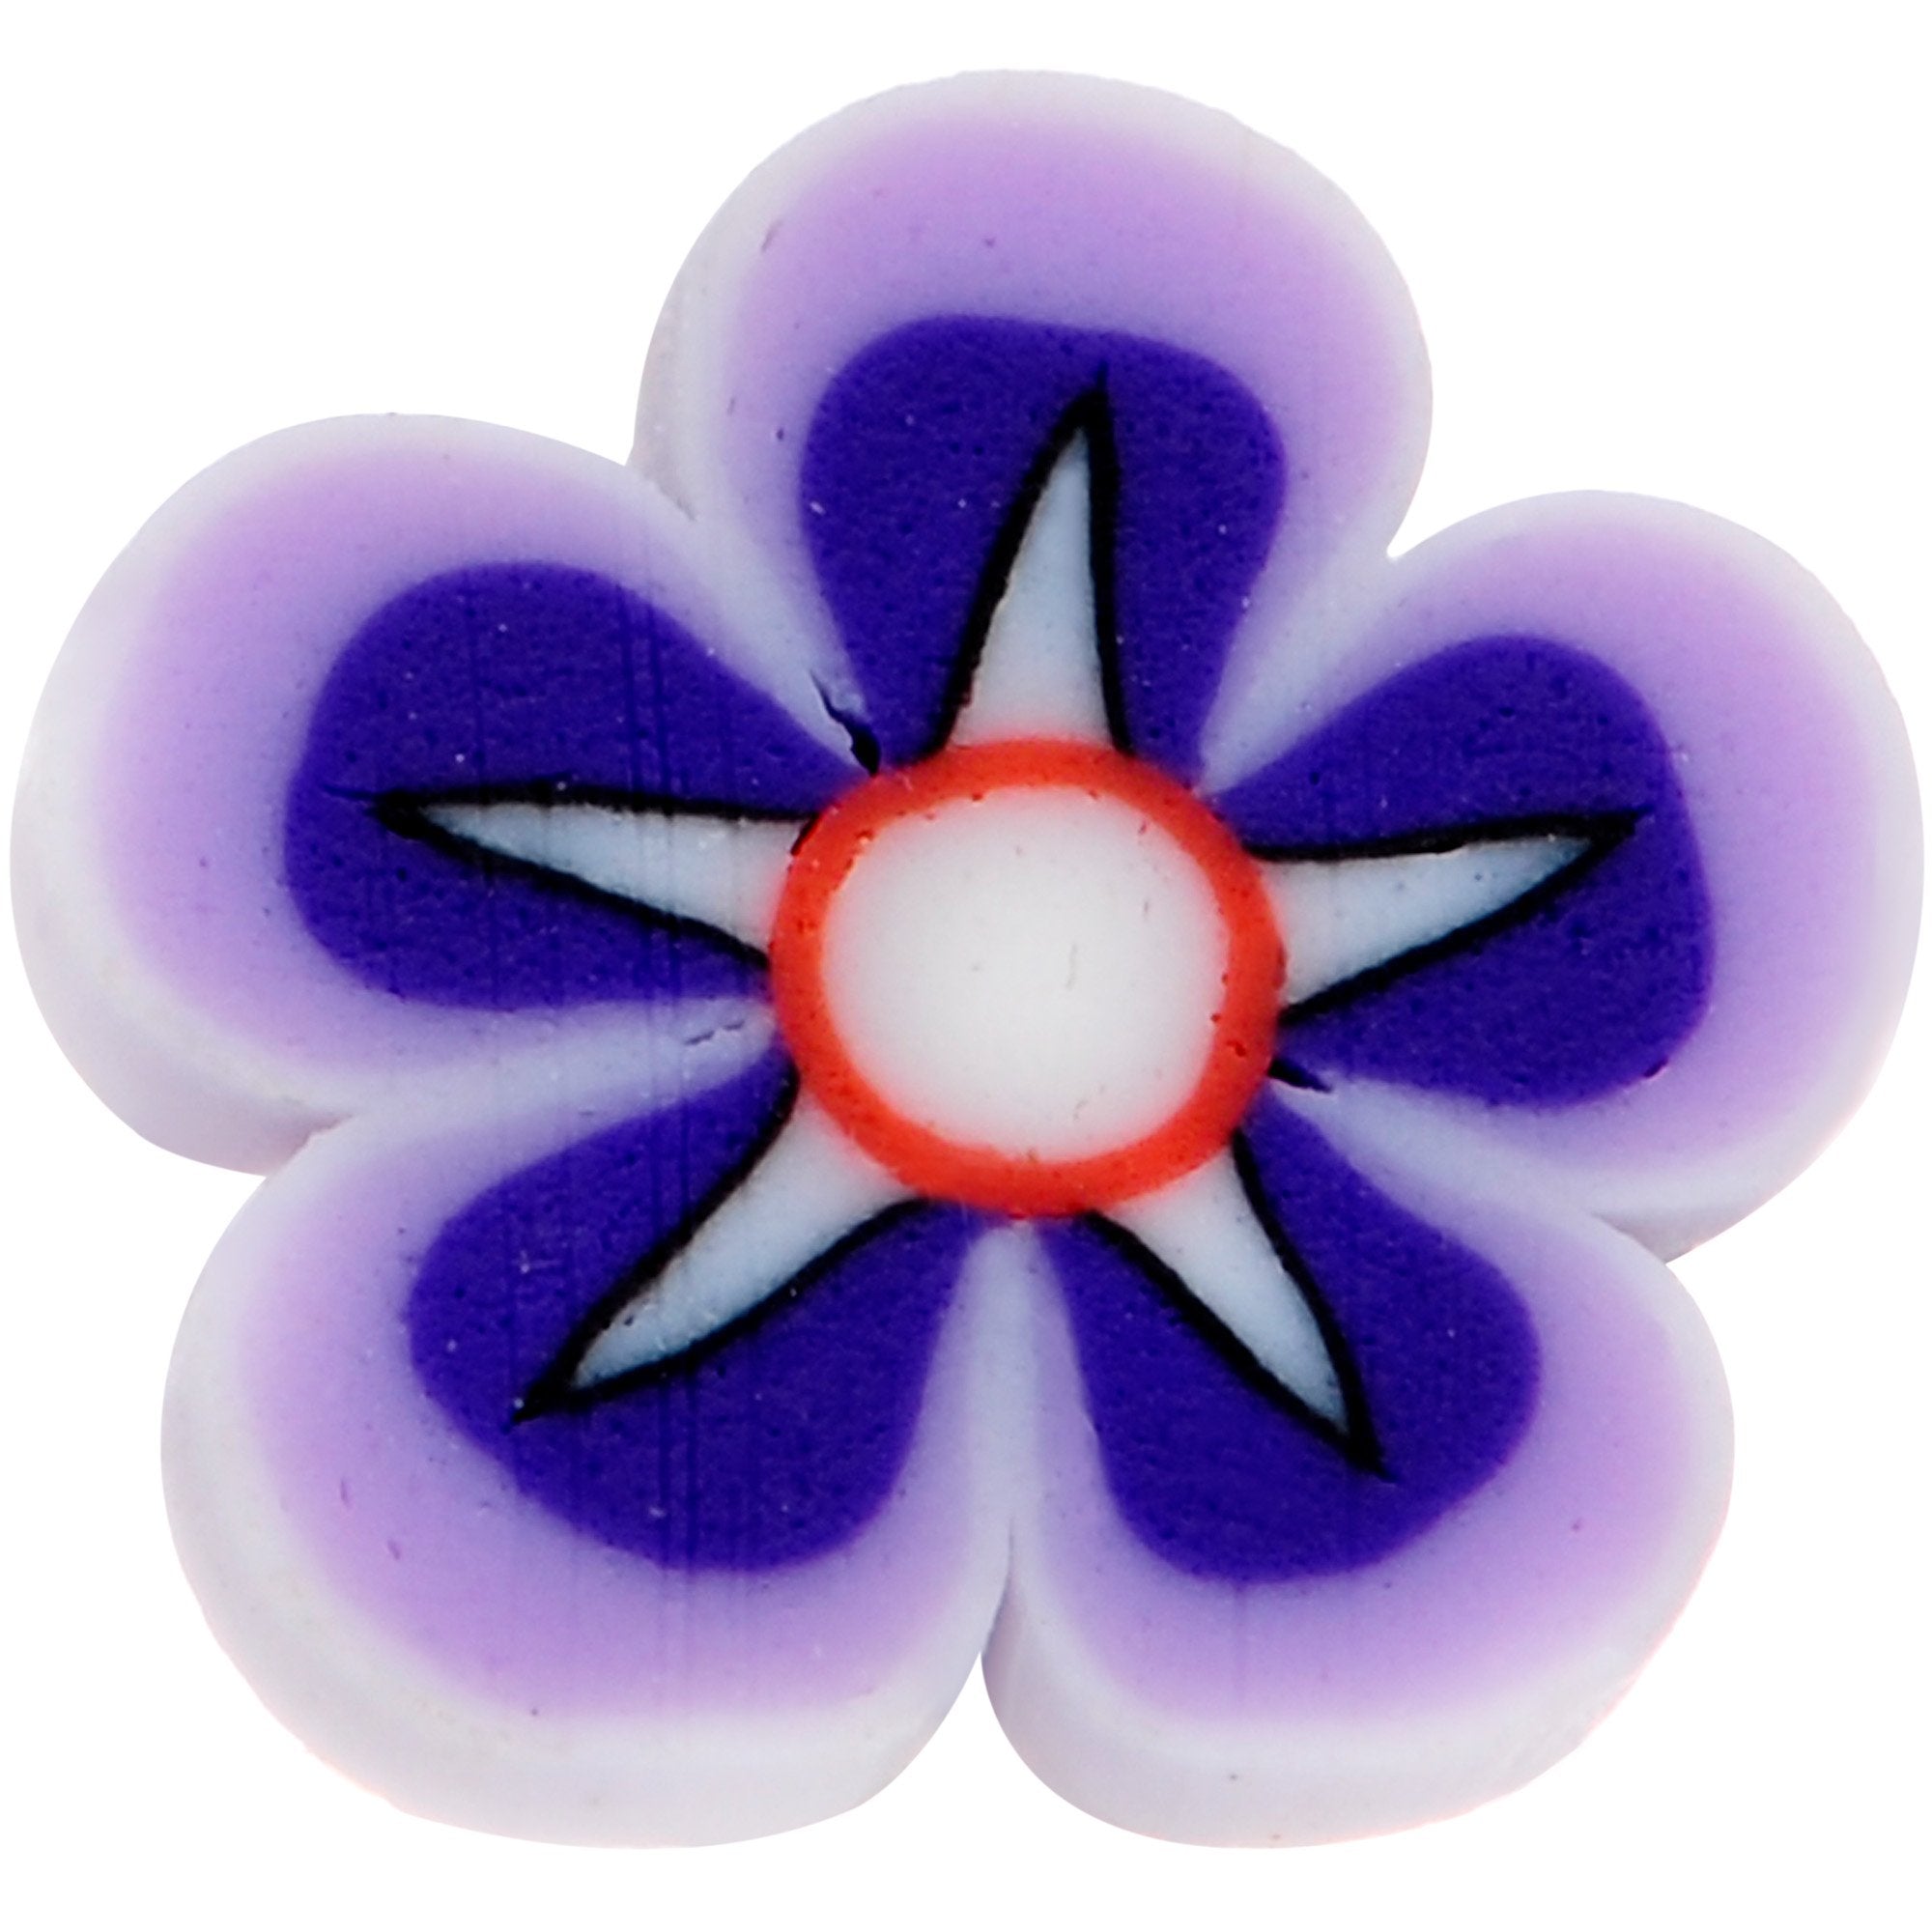 Handmade 1/4 5/16 Bioplast Purple Flower Push In Cartilage Earring